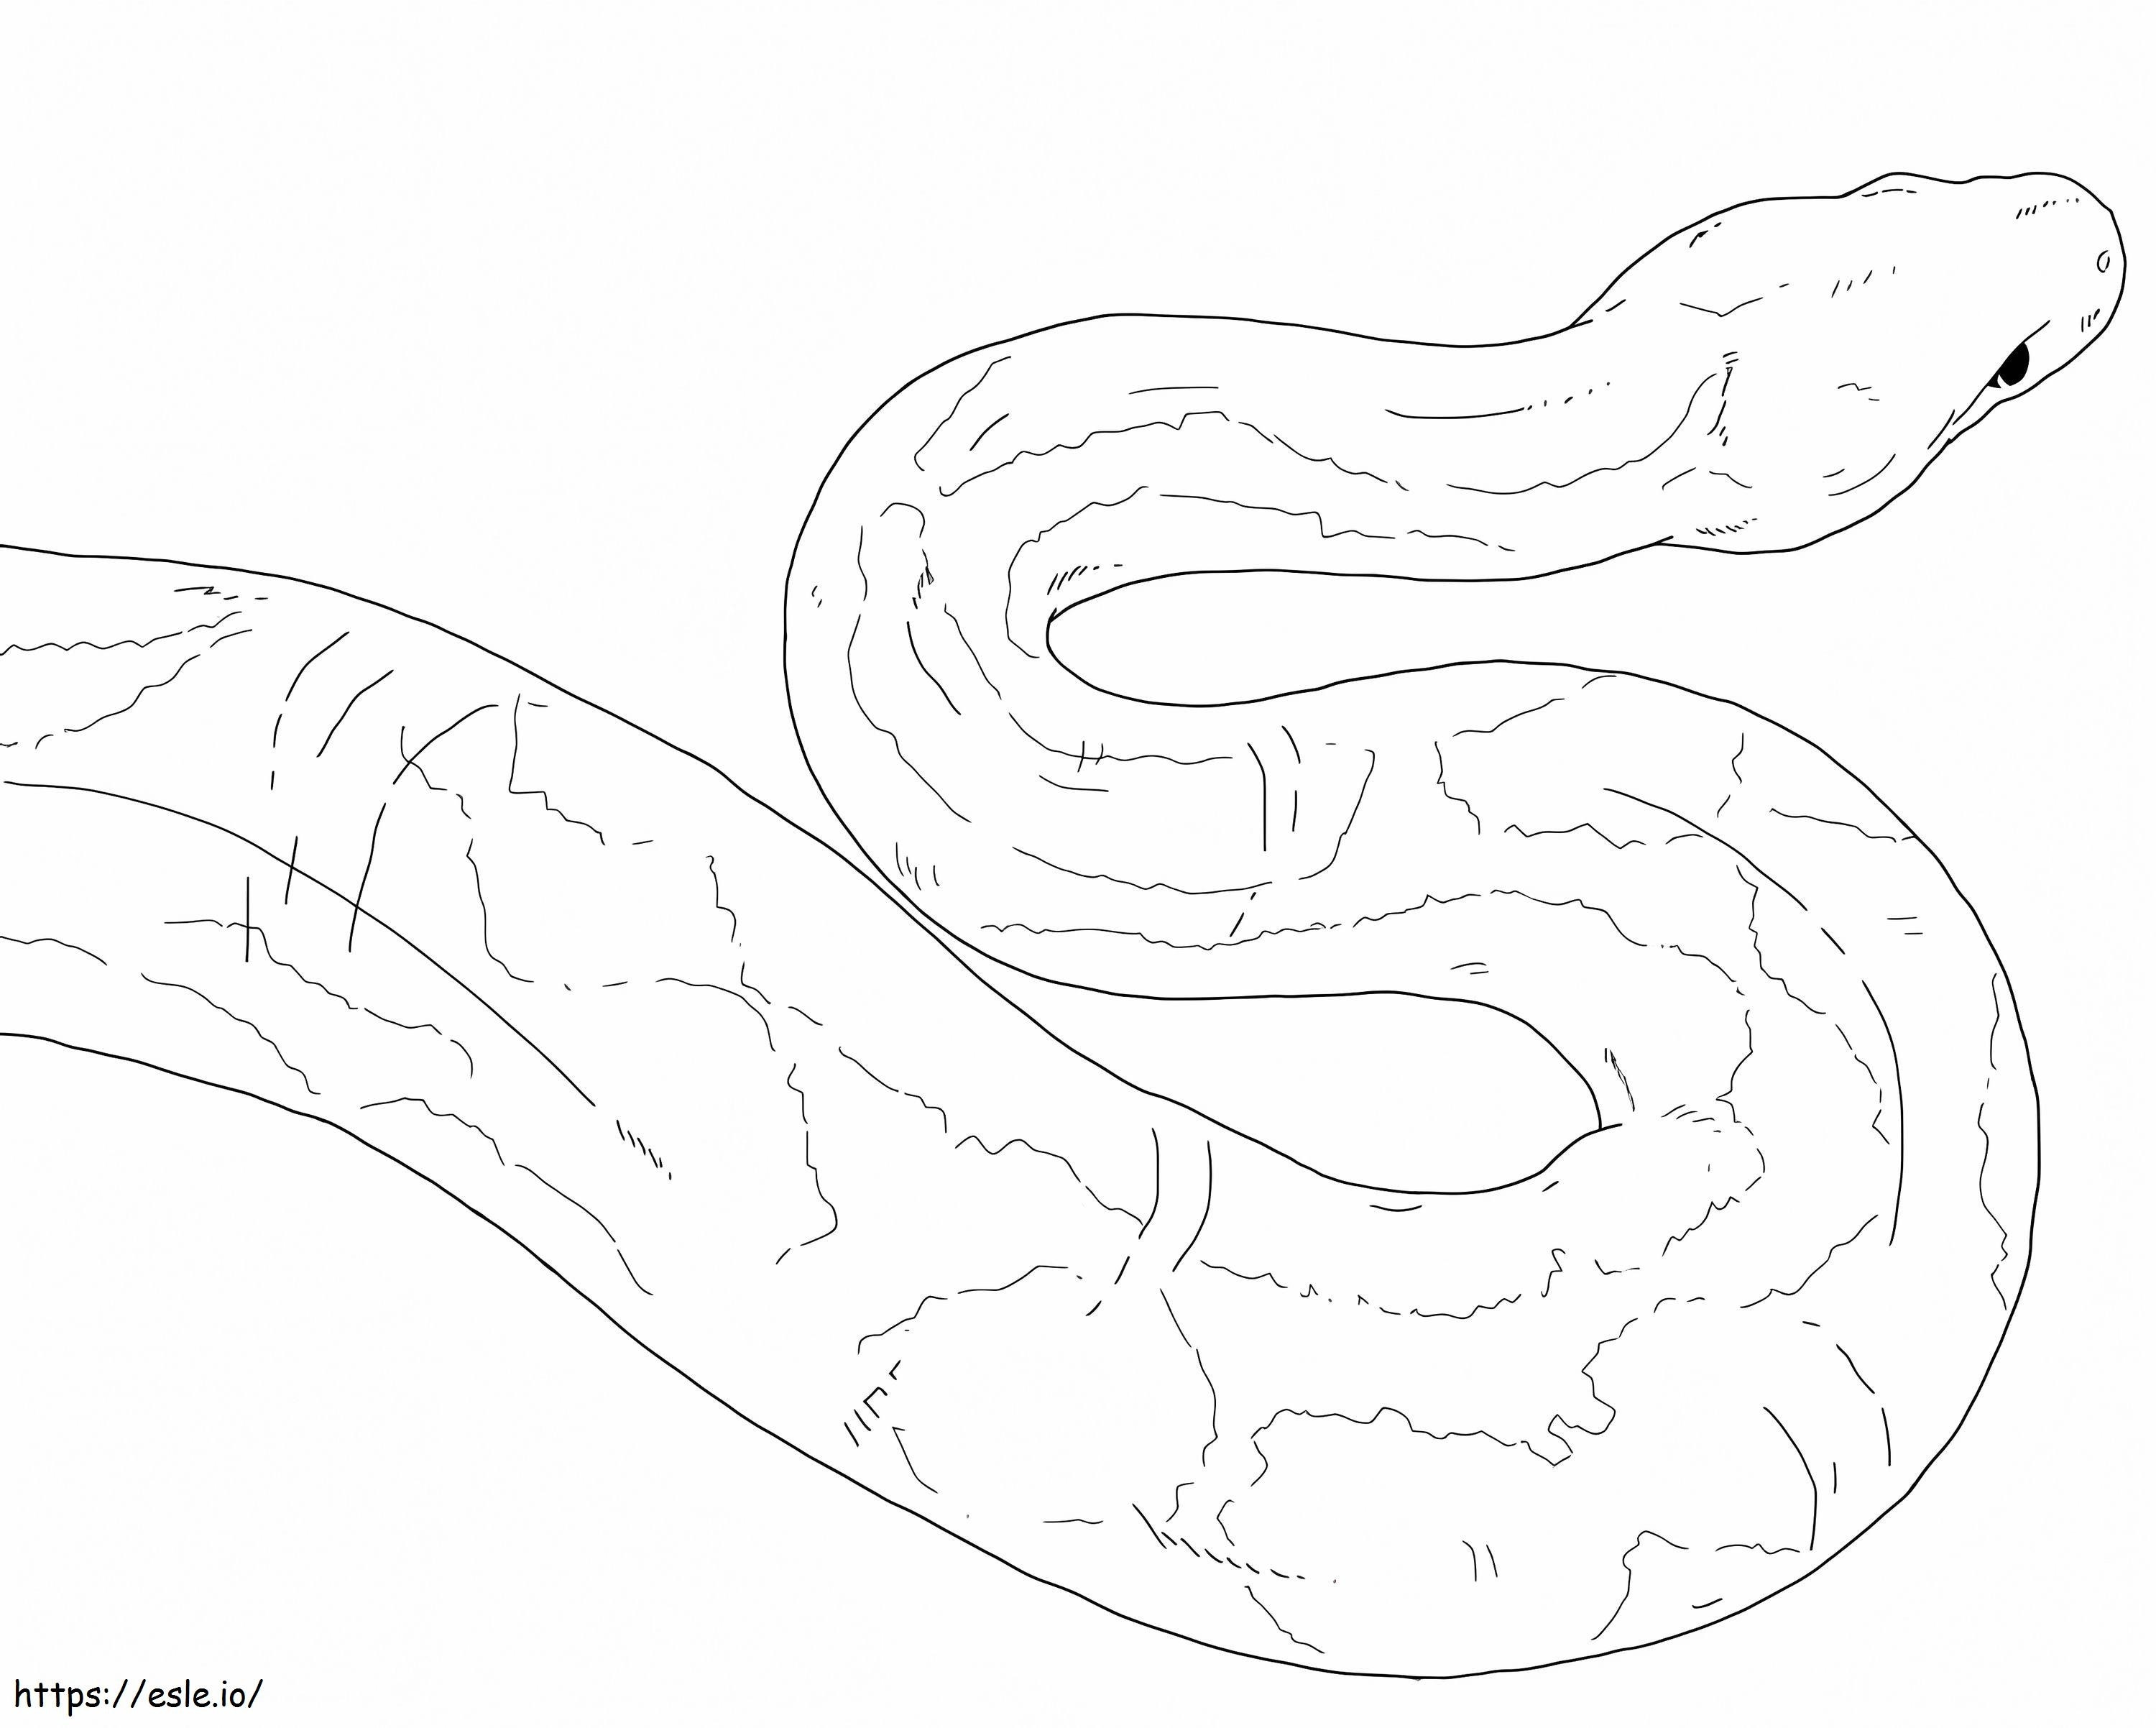 Yellow Anaconda coloring page